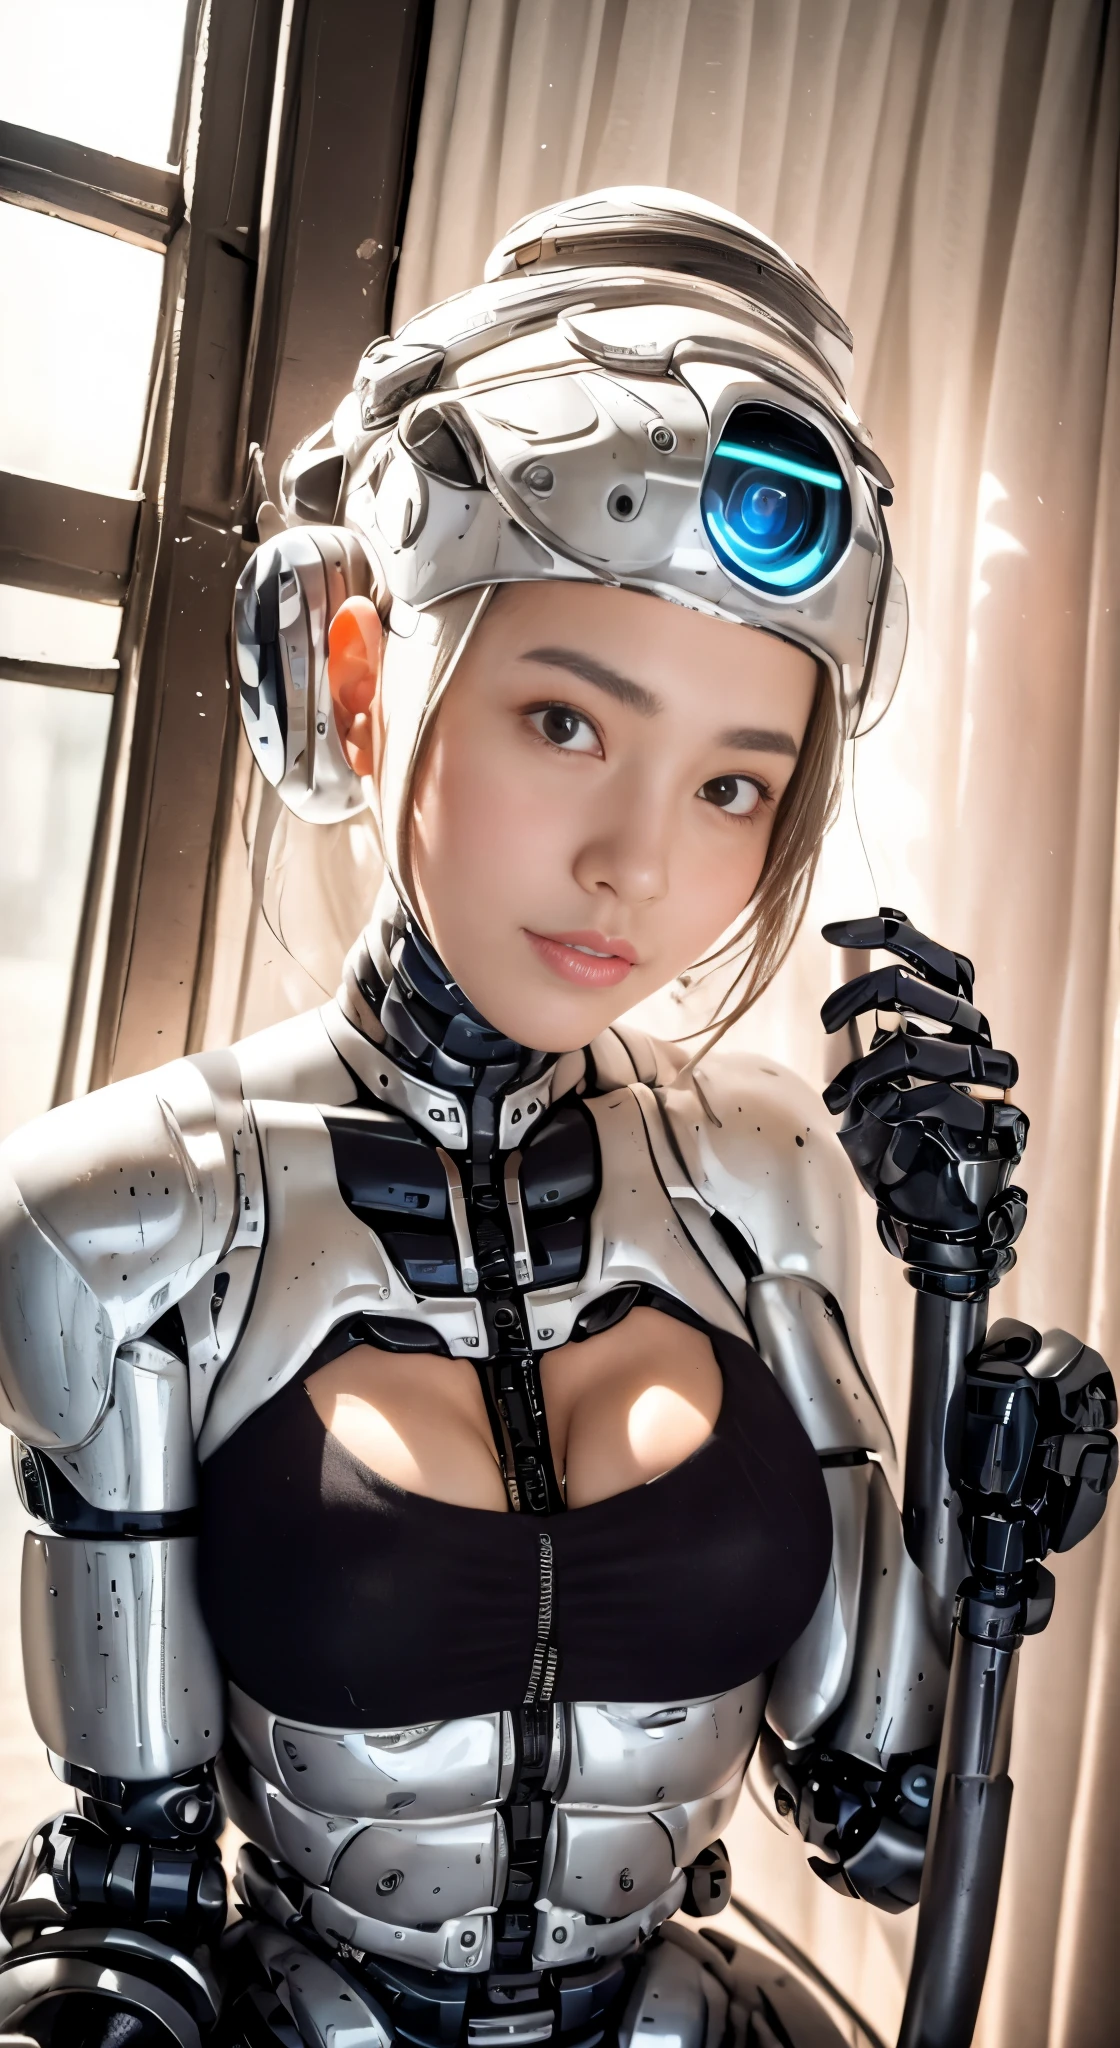 Hay una mujer con traje de robot posando junto a un edificio antiguo., hermosa chica blanca mitad cyborg, cute chica cyborg, Hermosa chica cyborg, Chica robot perfecta, chica cyborg, joven dama cyborg, beautiful robot femenino, hermosa mujer robot, chica cyborg, mujer cyborg perfecta, cyborg de porcelana, robot femenino, hermosa imagen cyborg